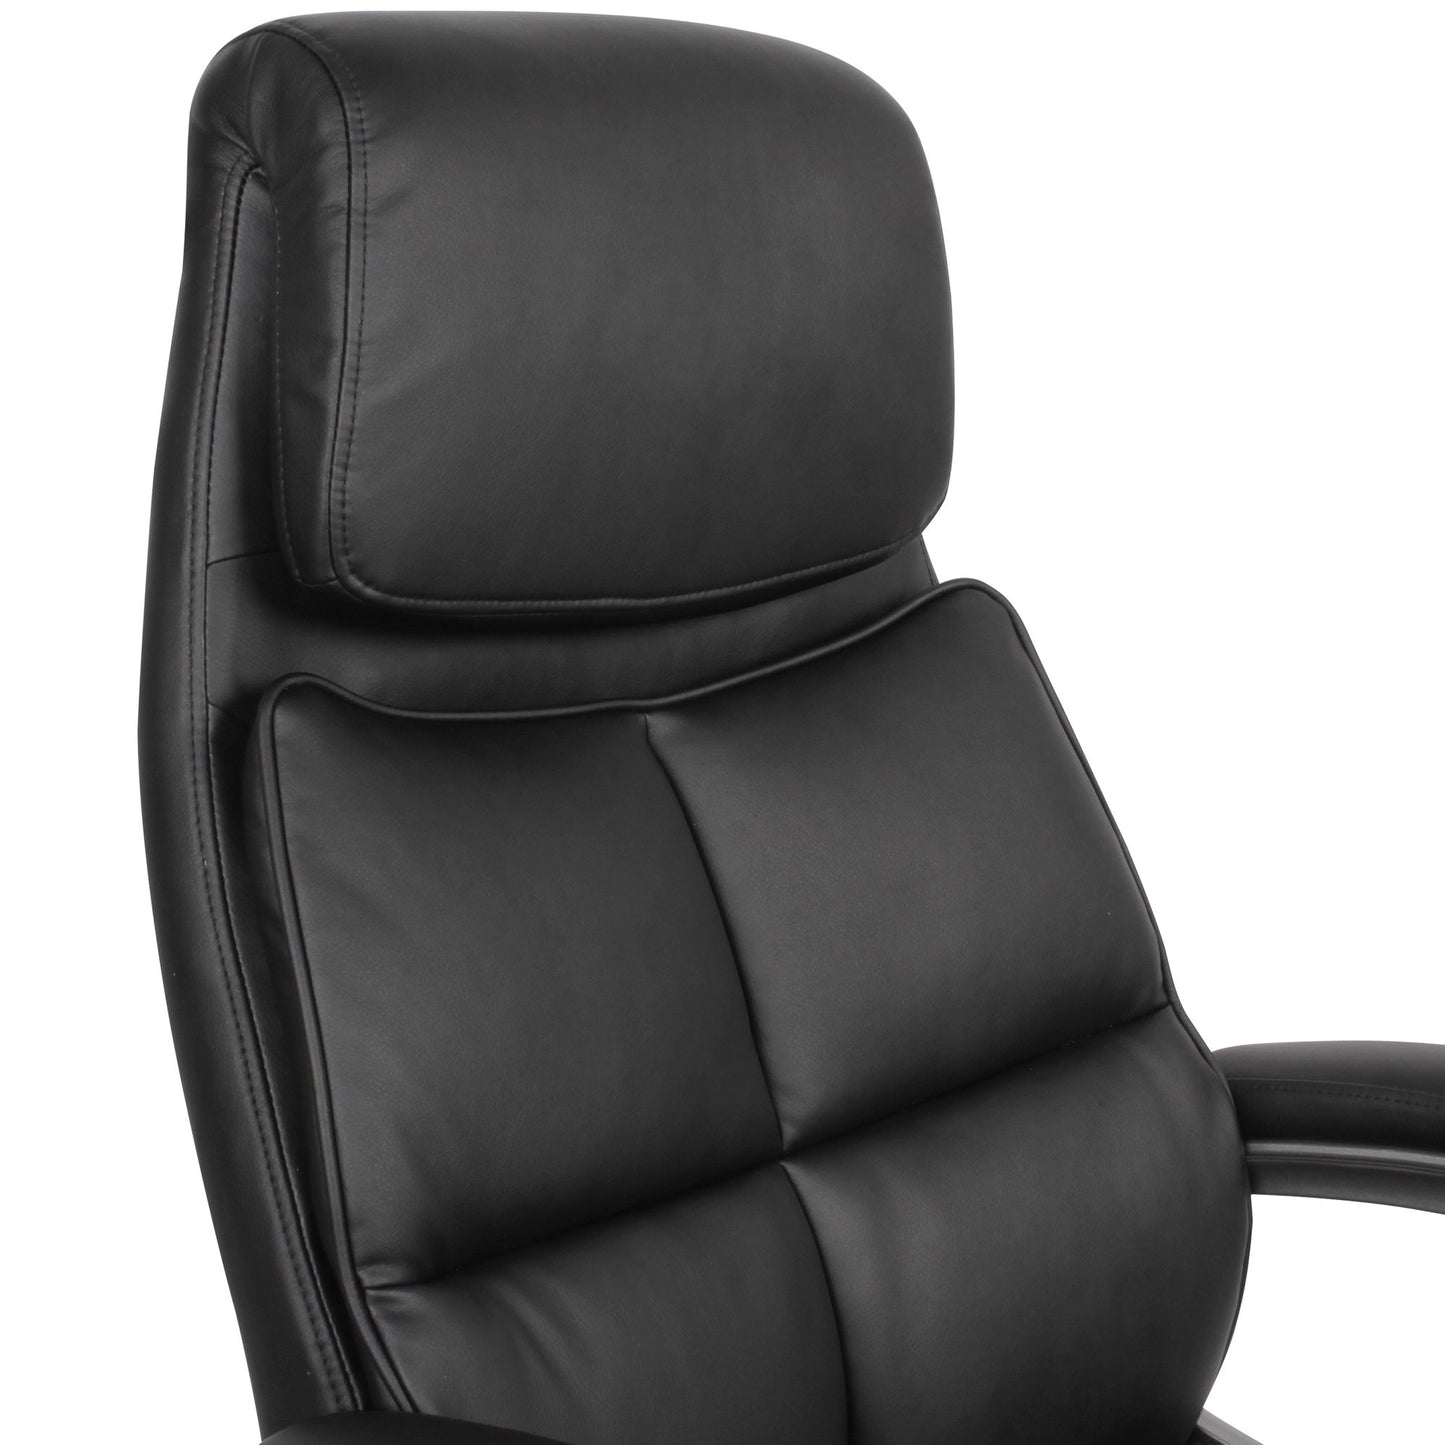 Chaise de bureau Nancy's Flint - Chaise pivotante - Chaise de bureau - Chaises de bureau - Simili cuir - Noir